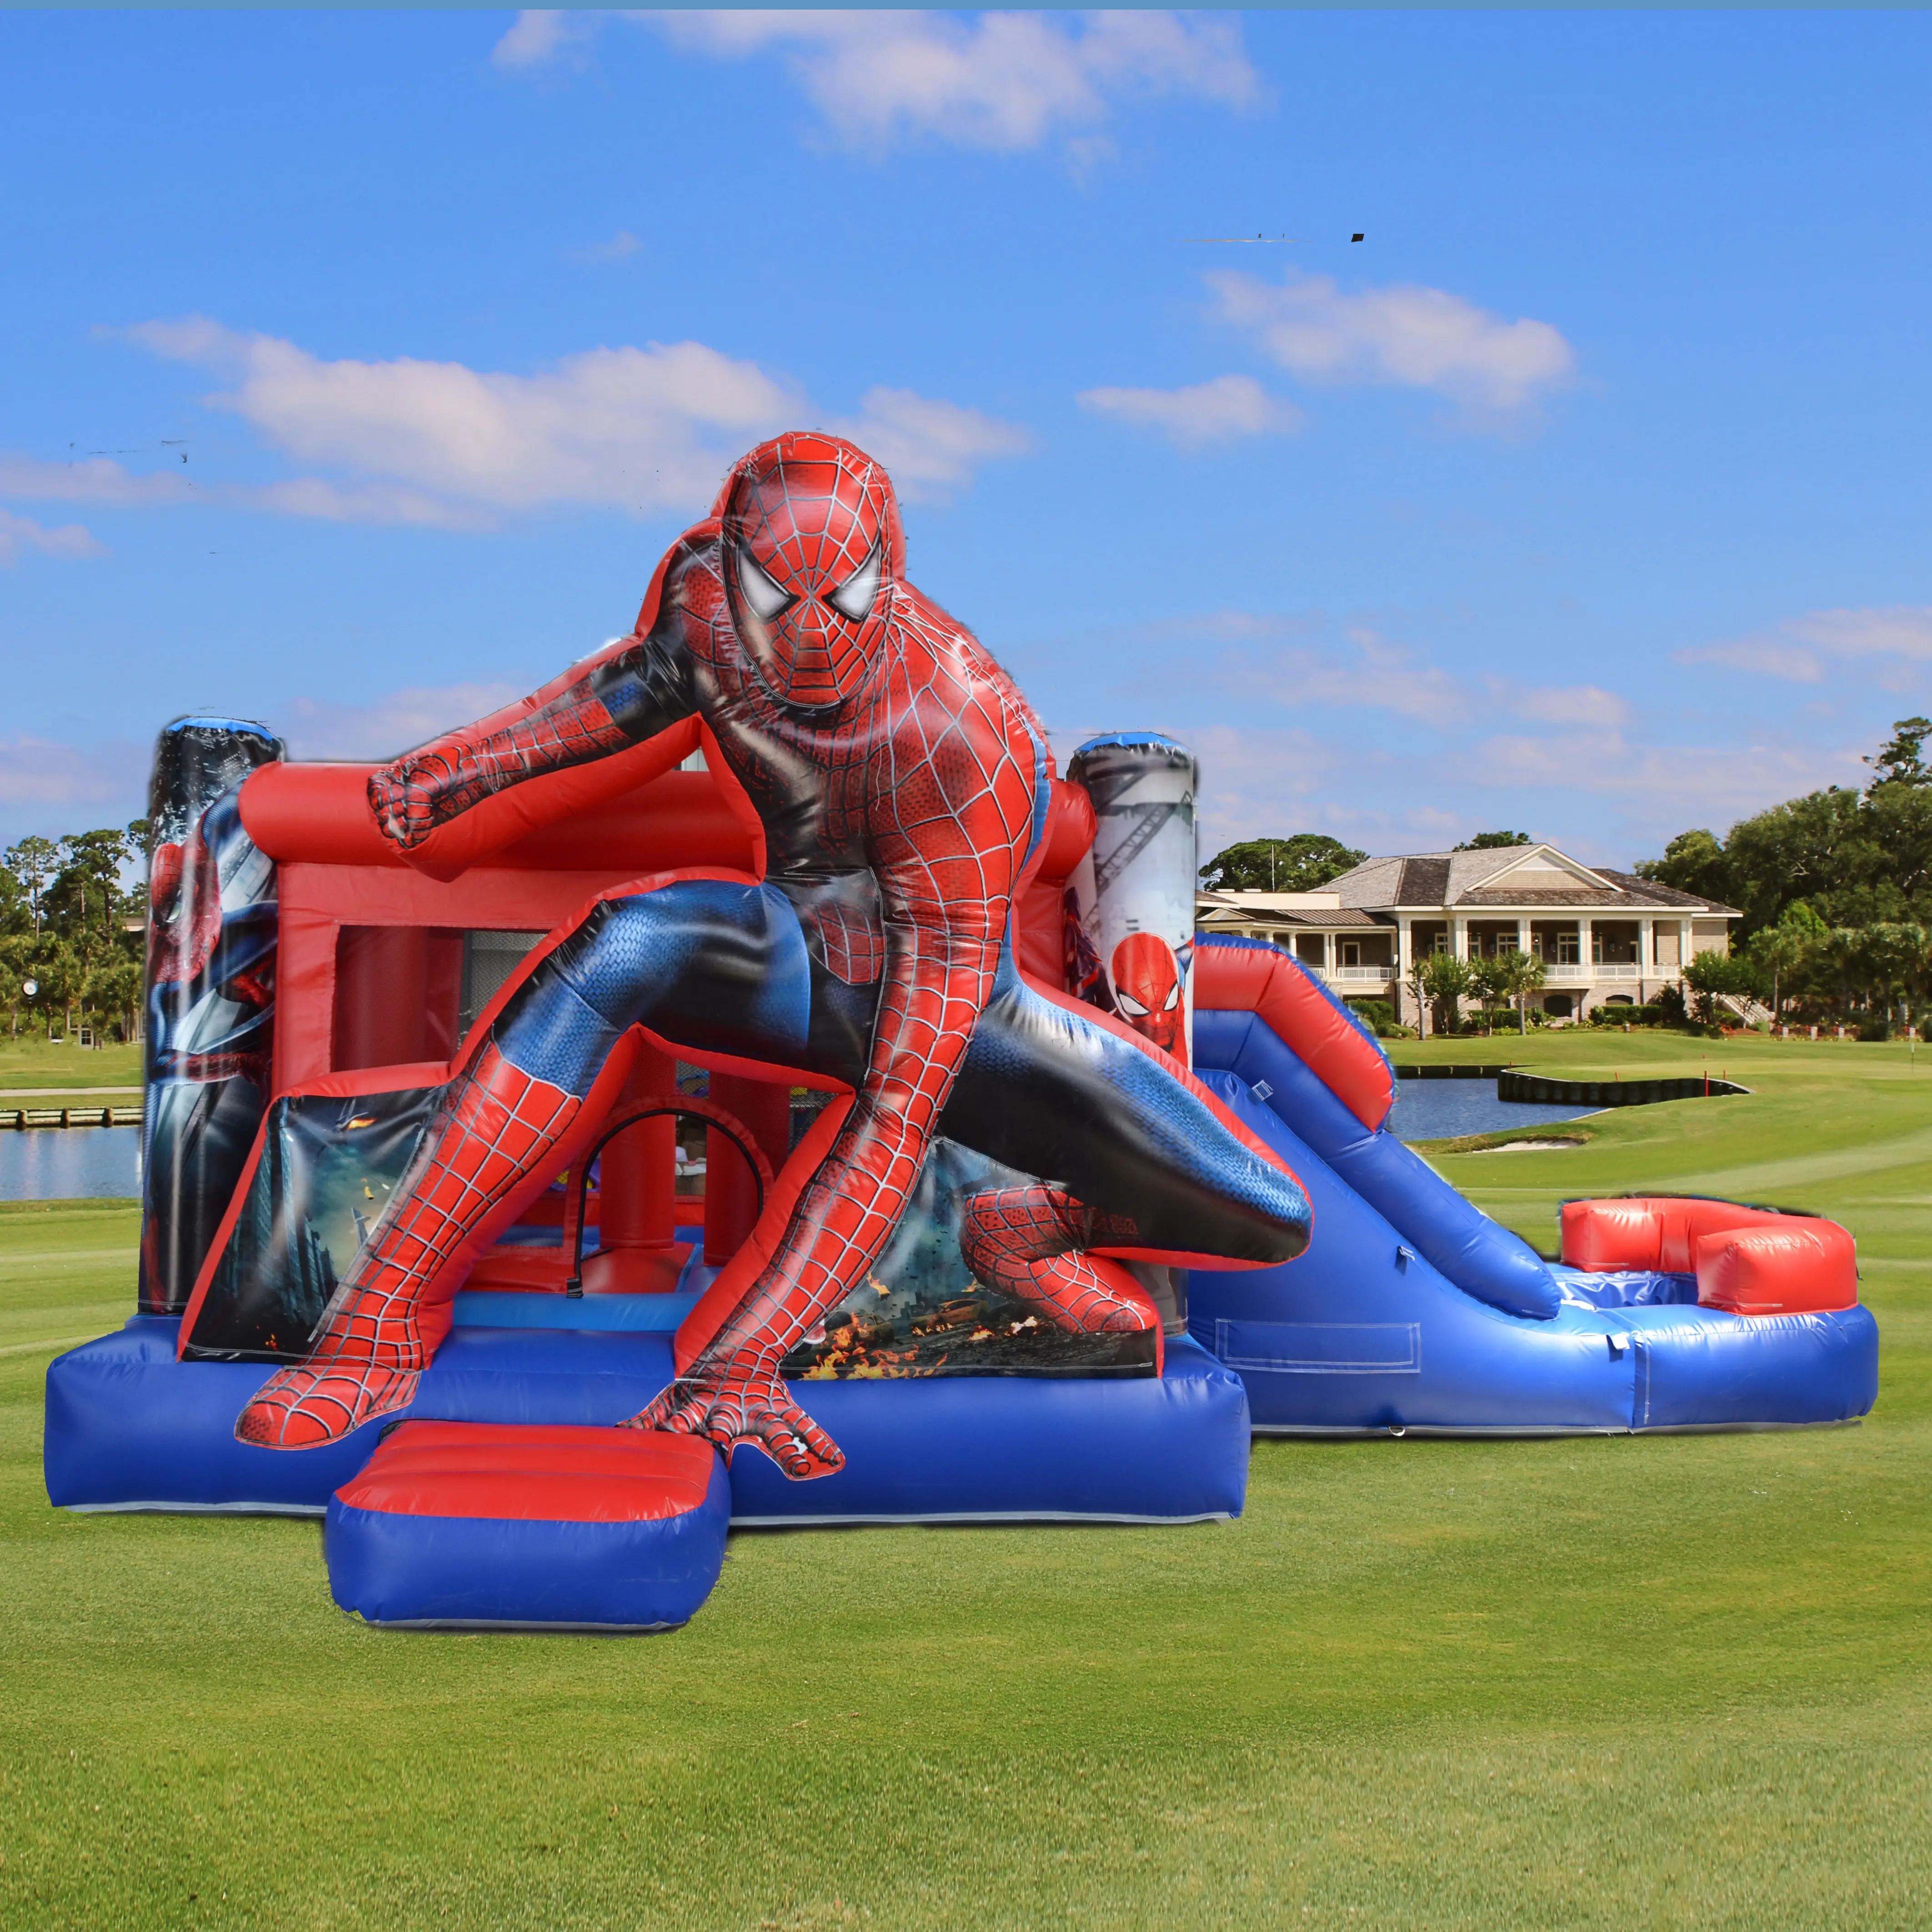 Petits châteaux gonflables gonflables personnalisés de Spiderman videur gonflable commercial extérieur de maison de rebond sautant pour des enfants et des adultes